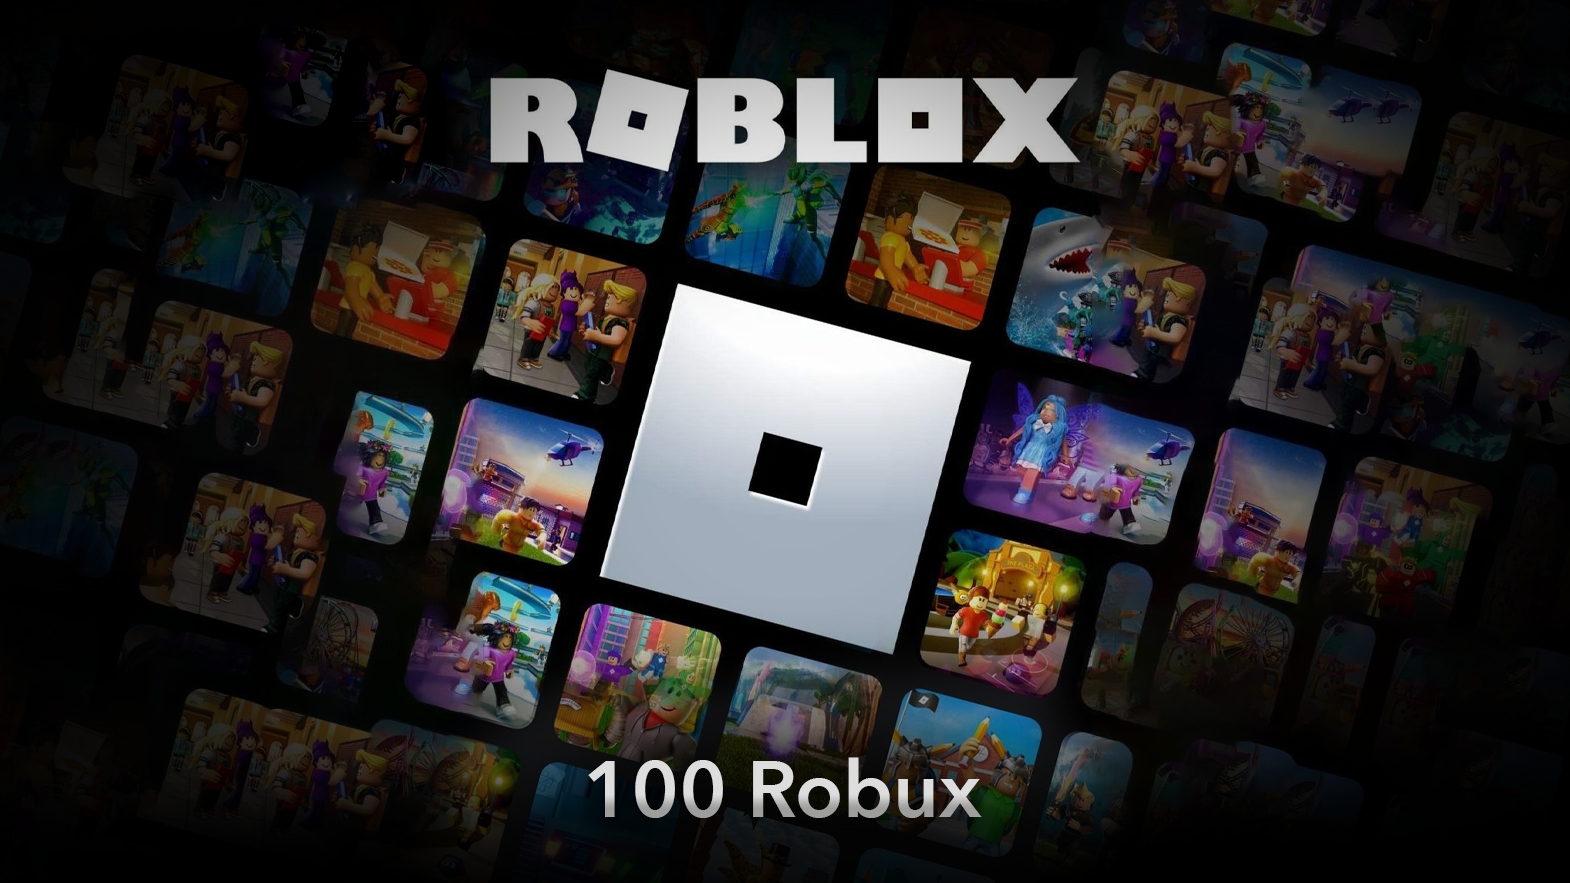 Tìm kiếm Roblox Card và sở hữu robux đáng giá để diễn trang phục cho avatar của bạn. Với 100 robux, bạn có thể hoàn thiện hình ảnh của character với những lựa chọn tuỳ ý.